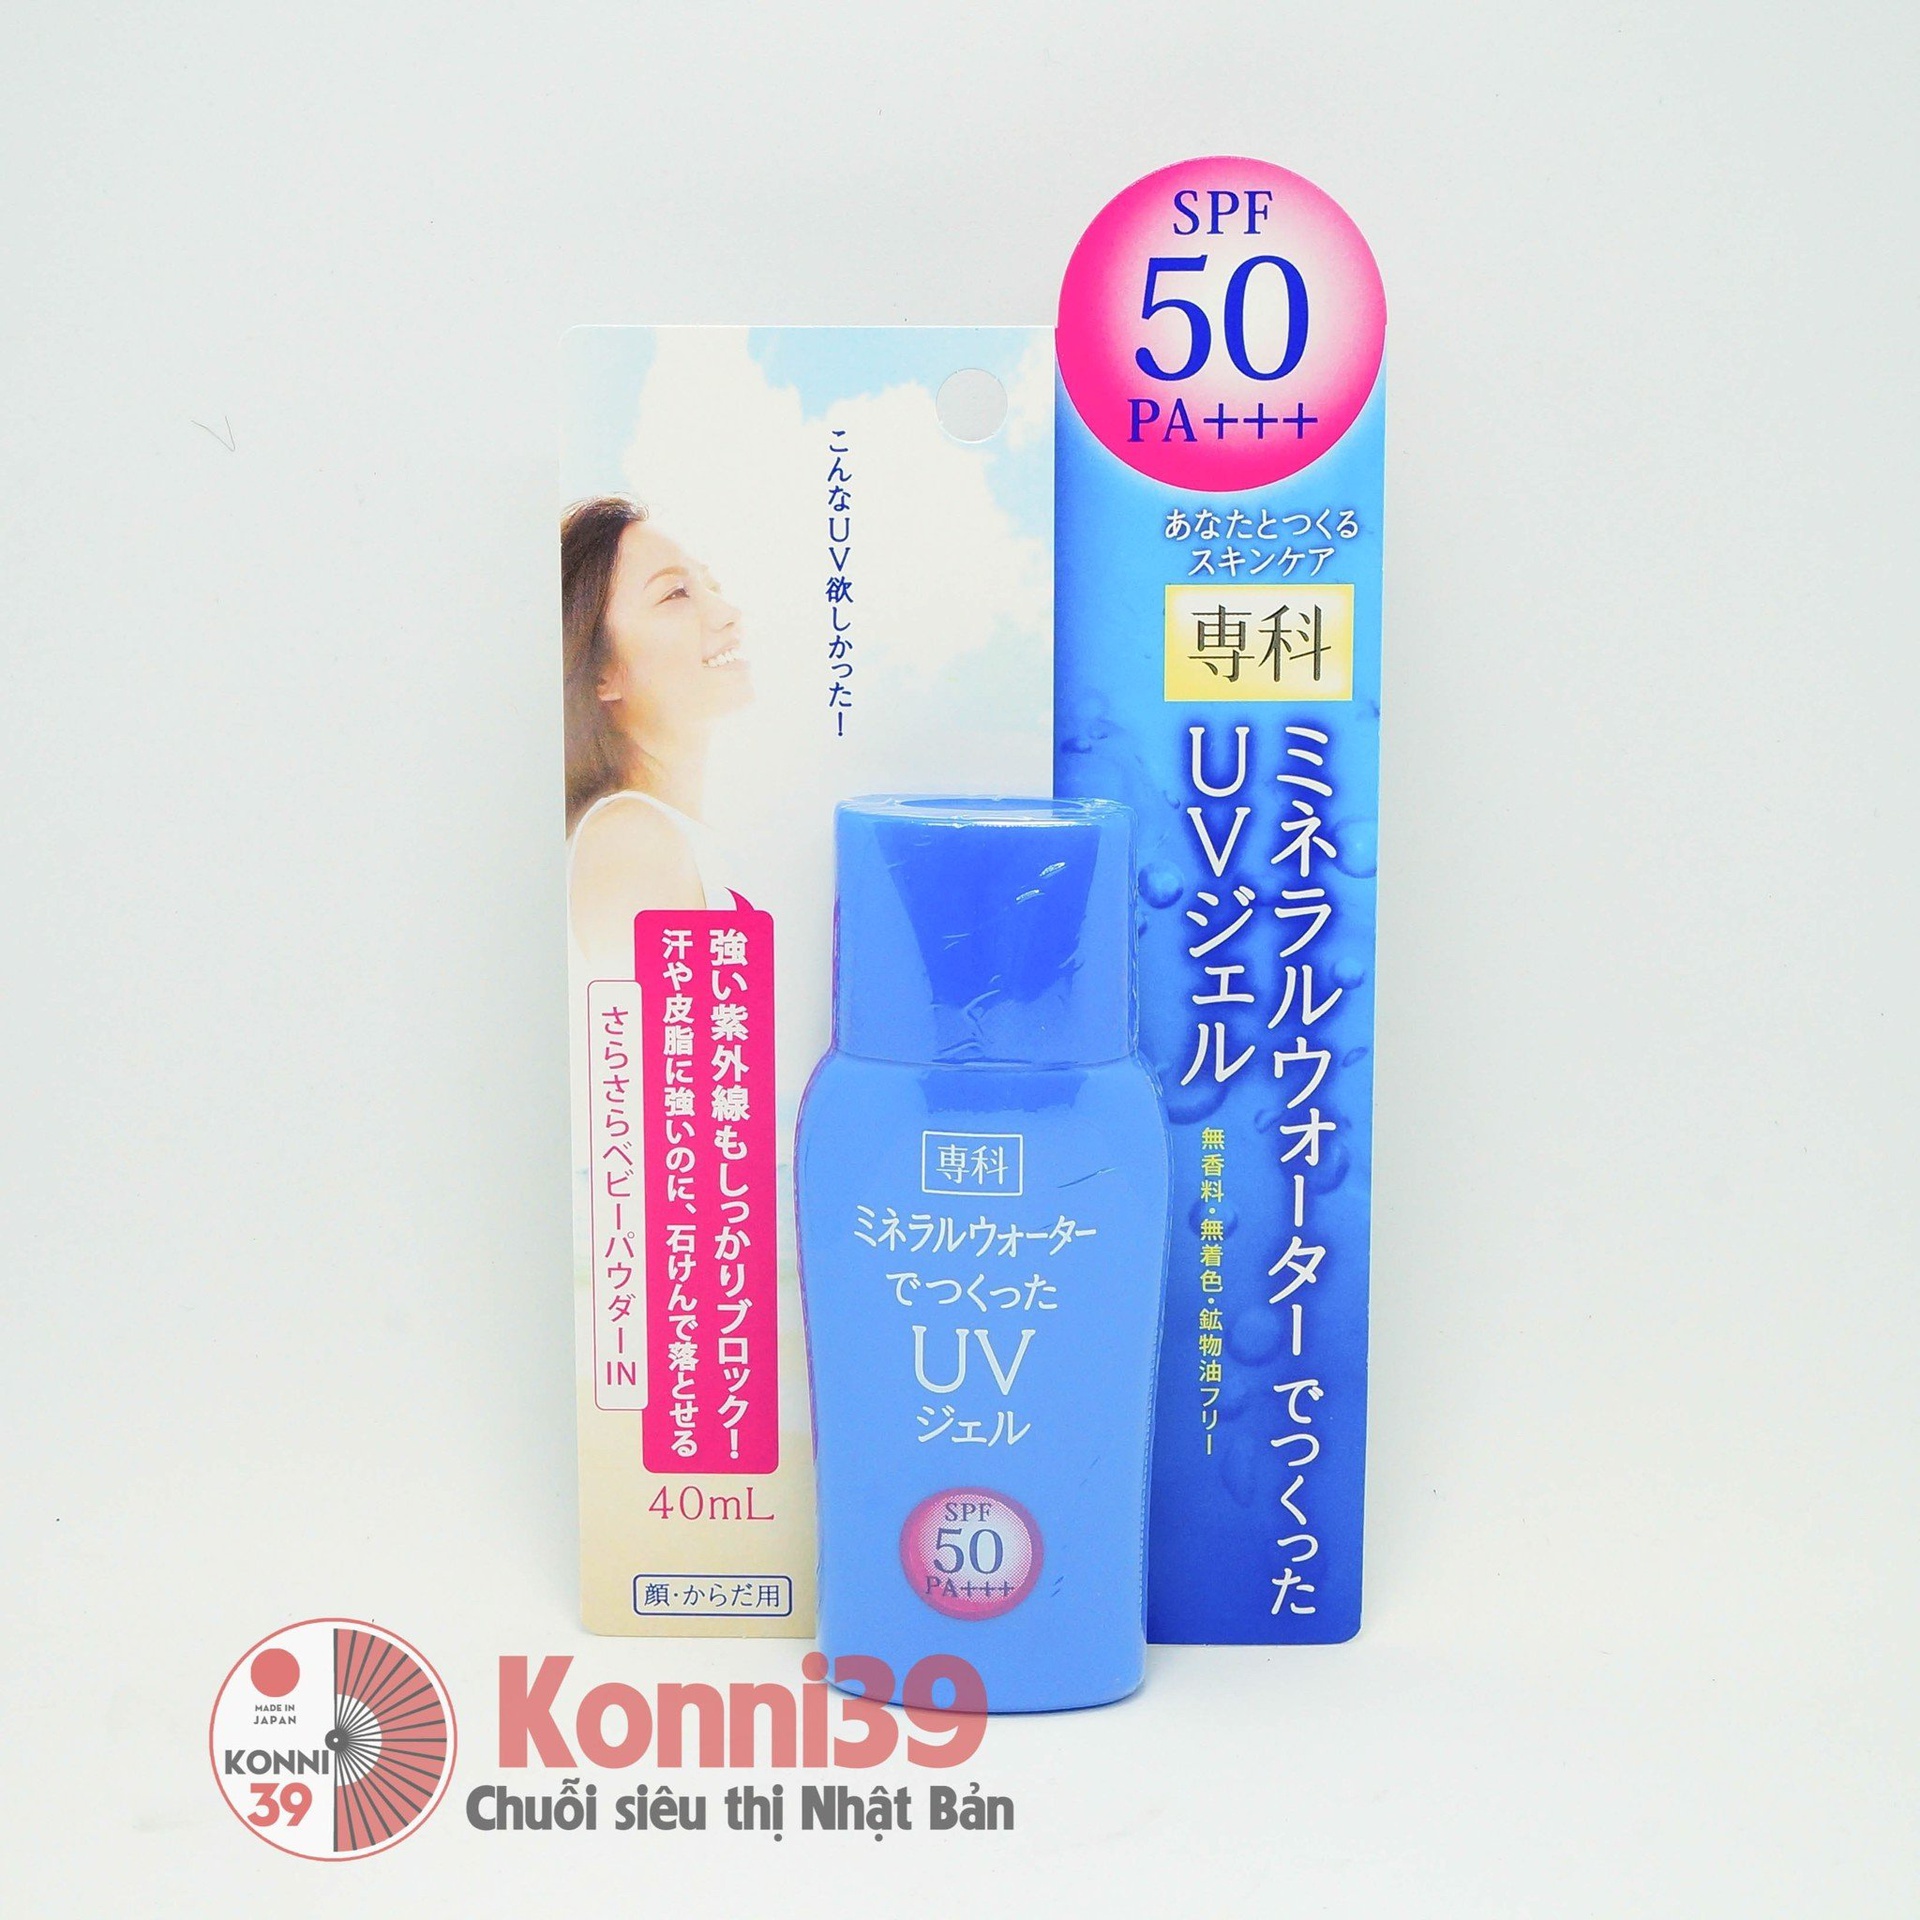 Kem chống nắng Shiseido SPF50+PA++++ 40ml